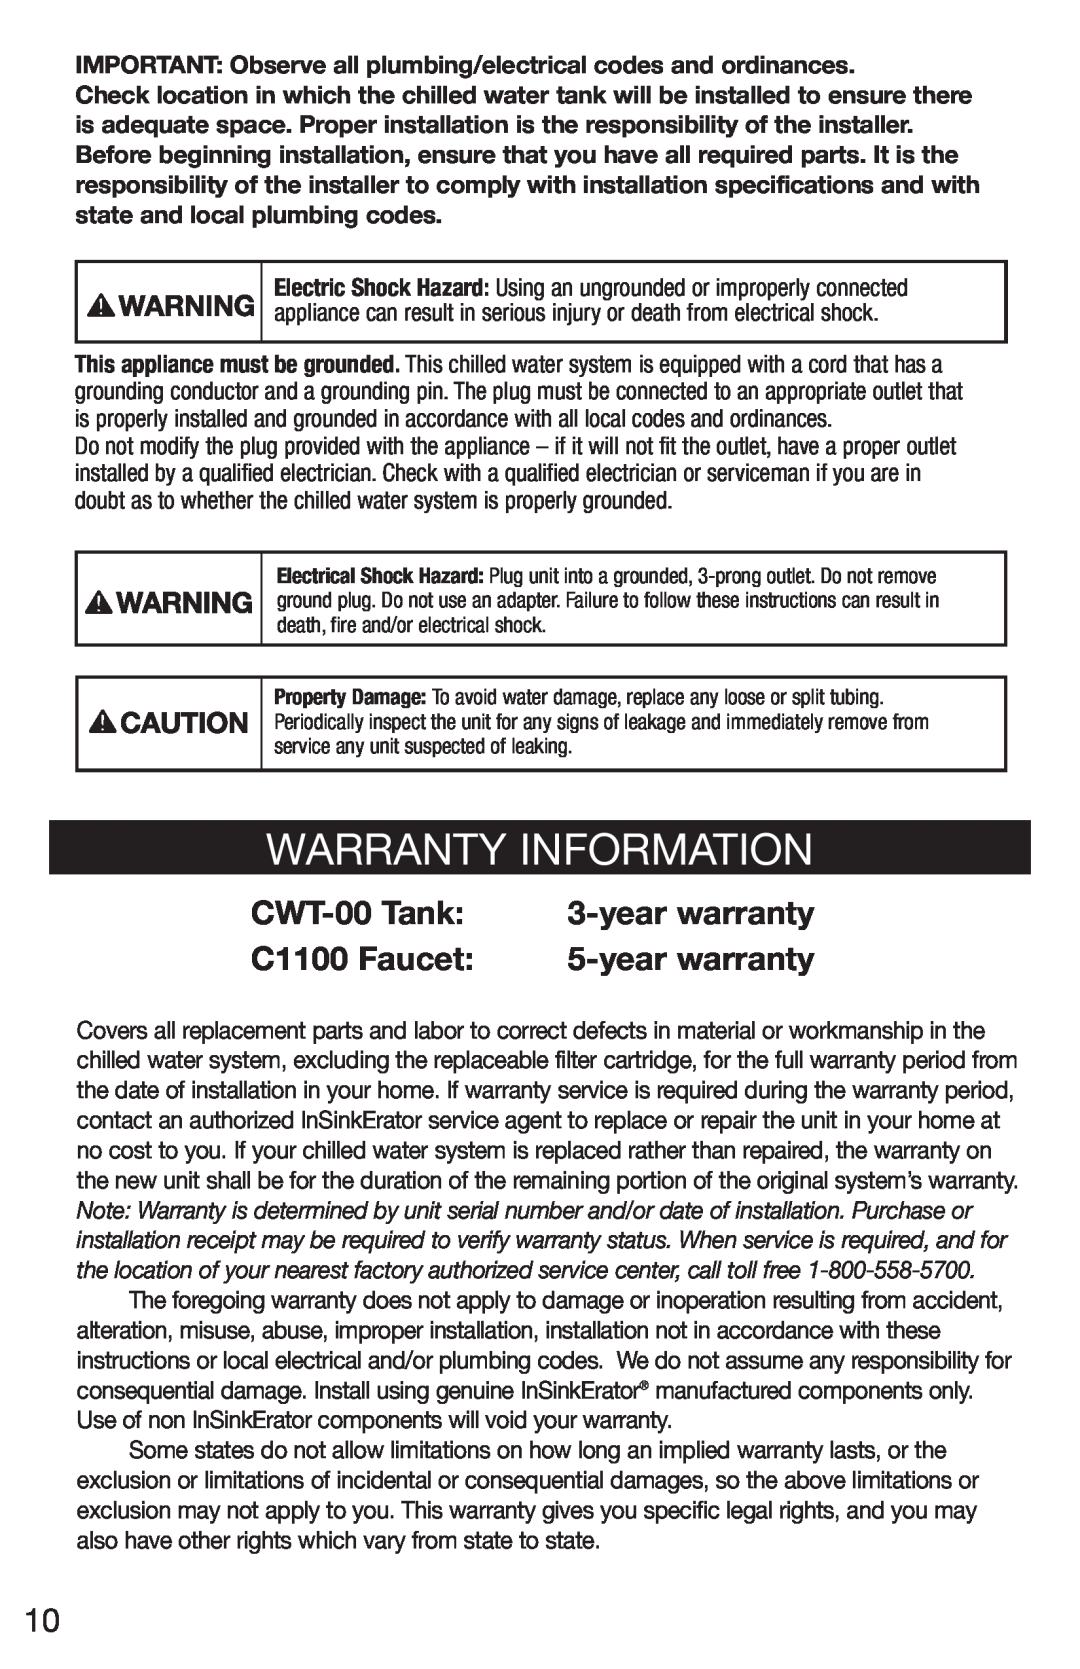 InSinkErator F-C1100 owner manual Warranty Information, CWT-00Tank, yearwarranty, C1100 Faucet 